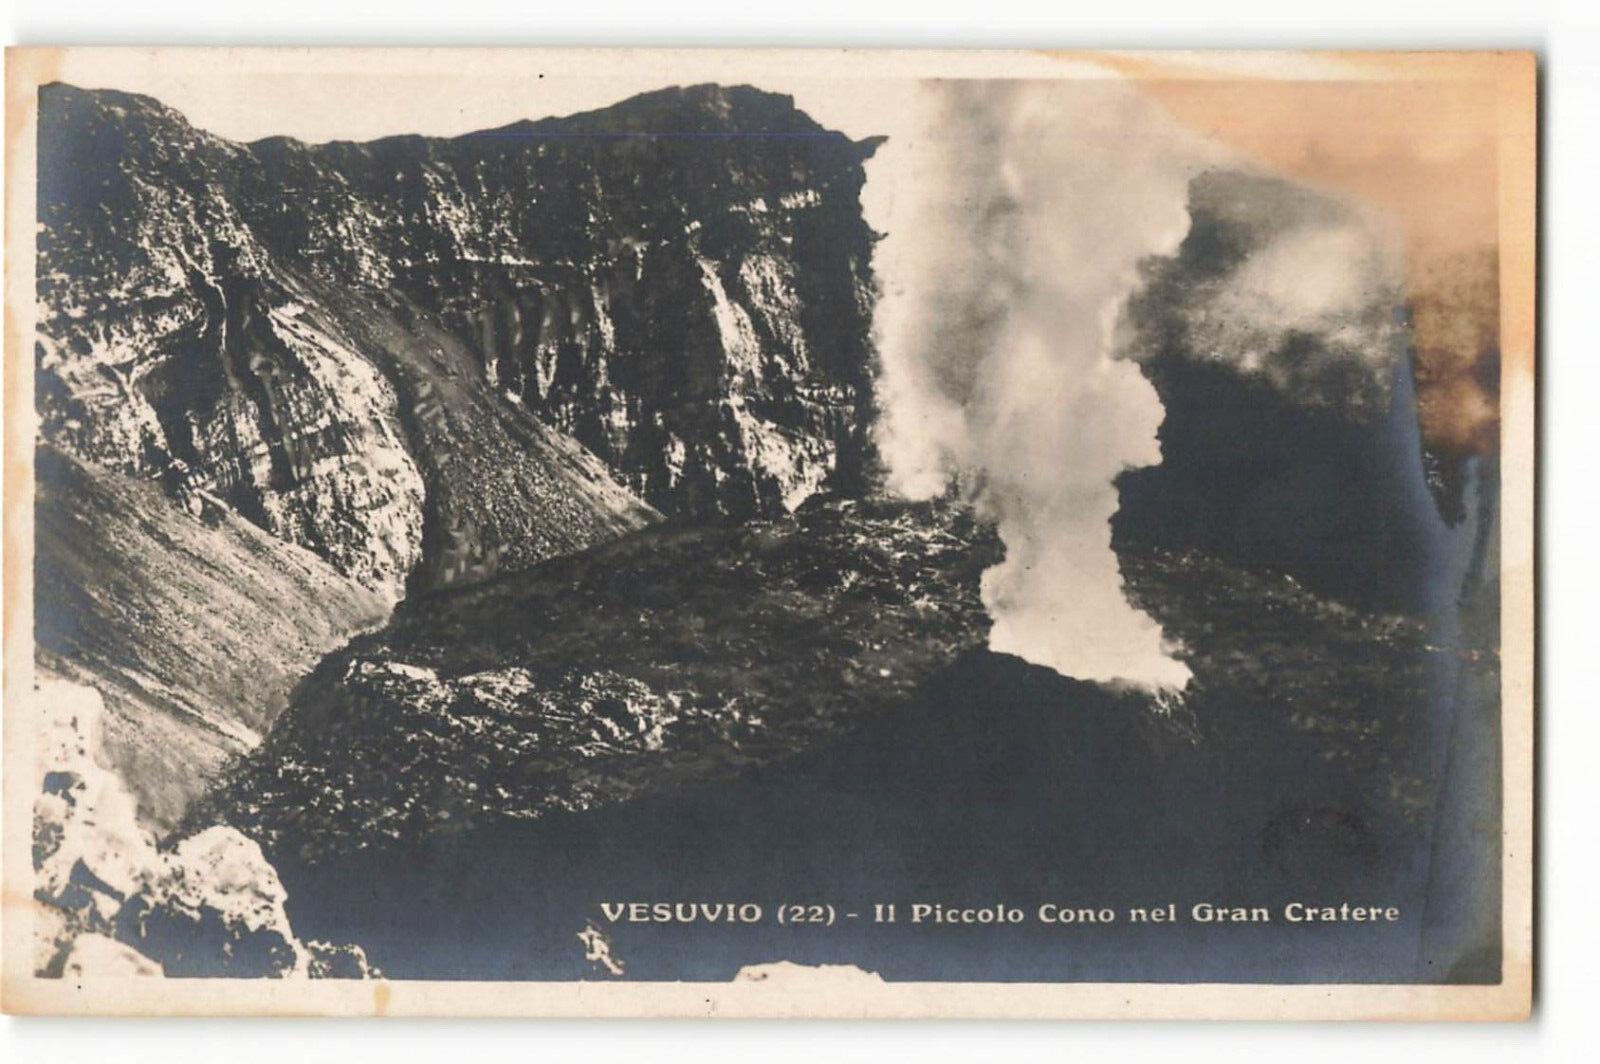 Postcard RPPC Vesuvio (22) - II Piccolo Cono nel Gran Cratere VTG ME6.